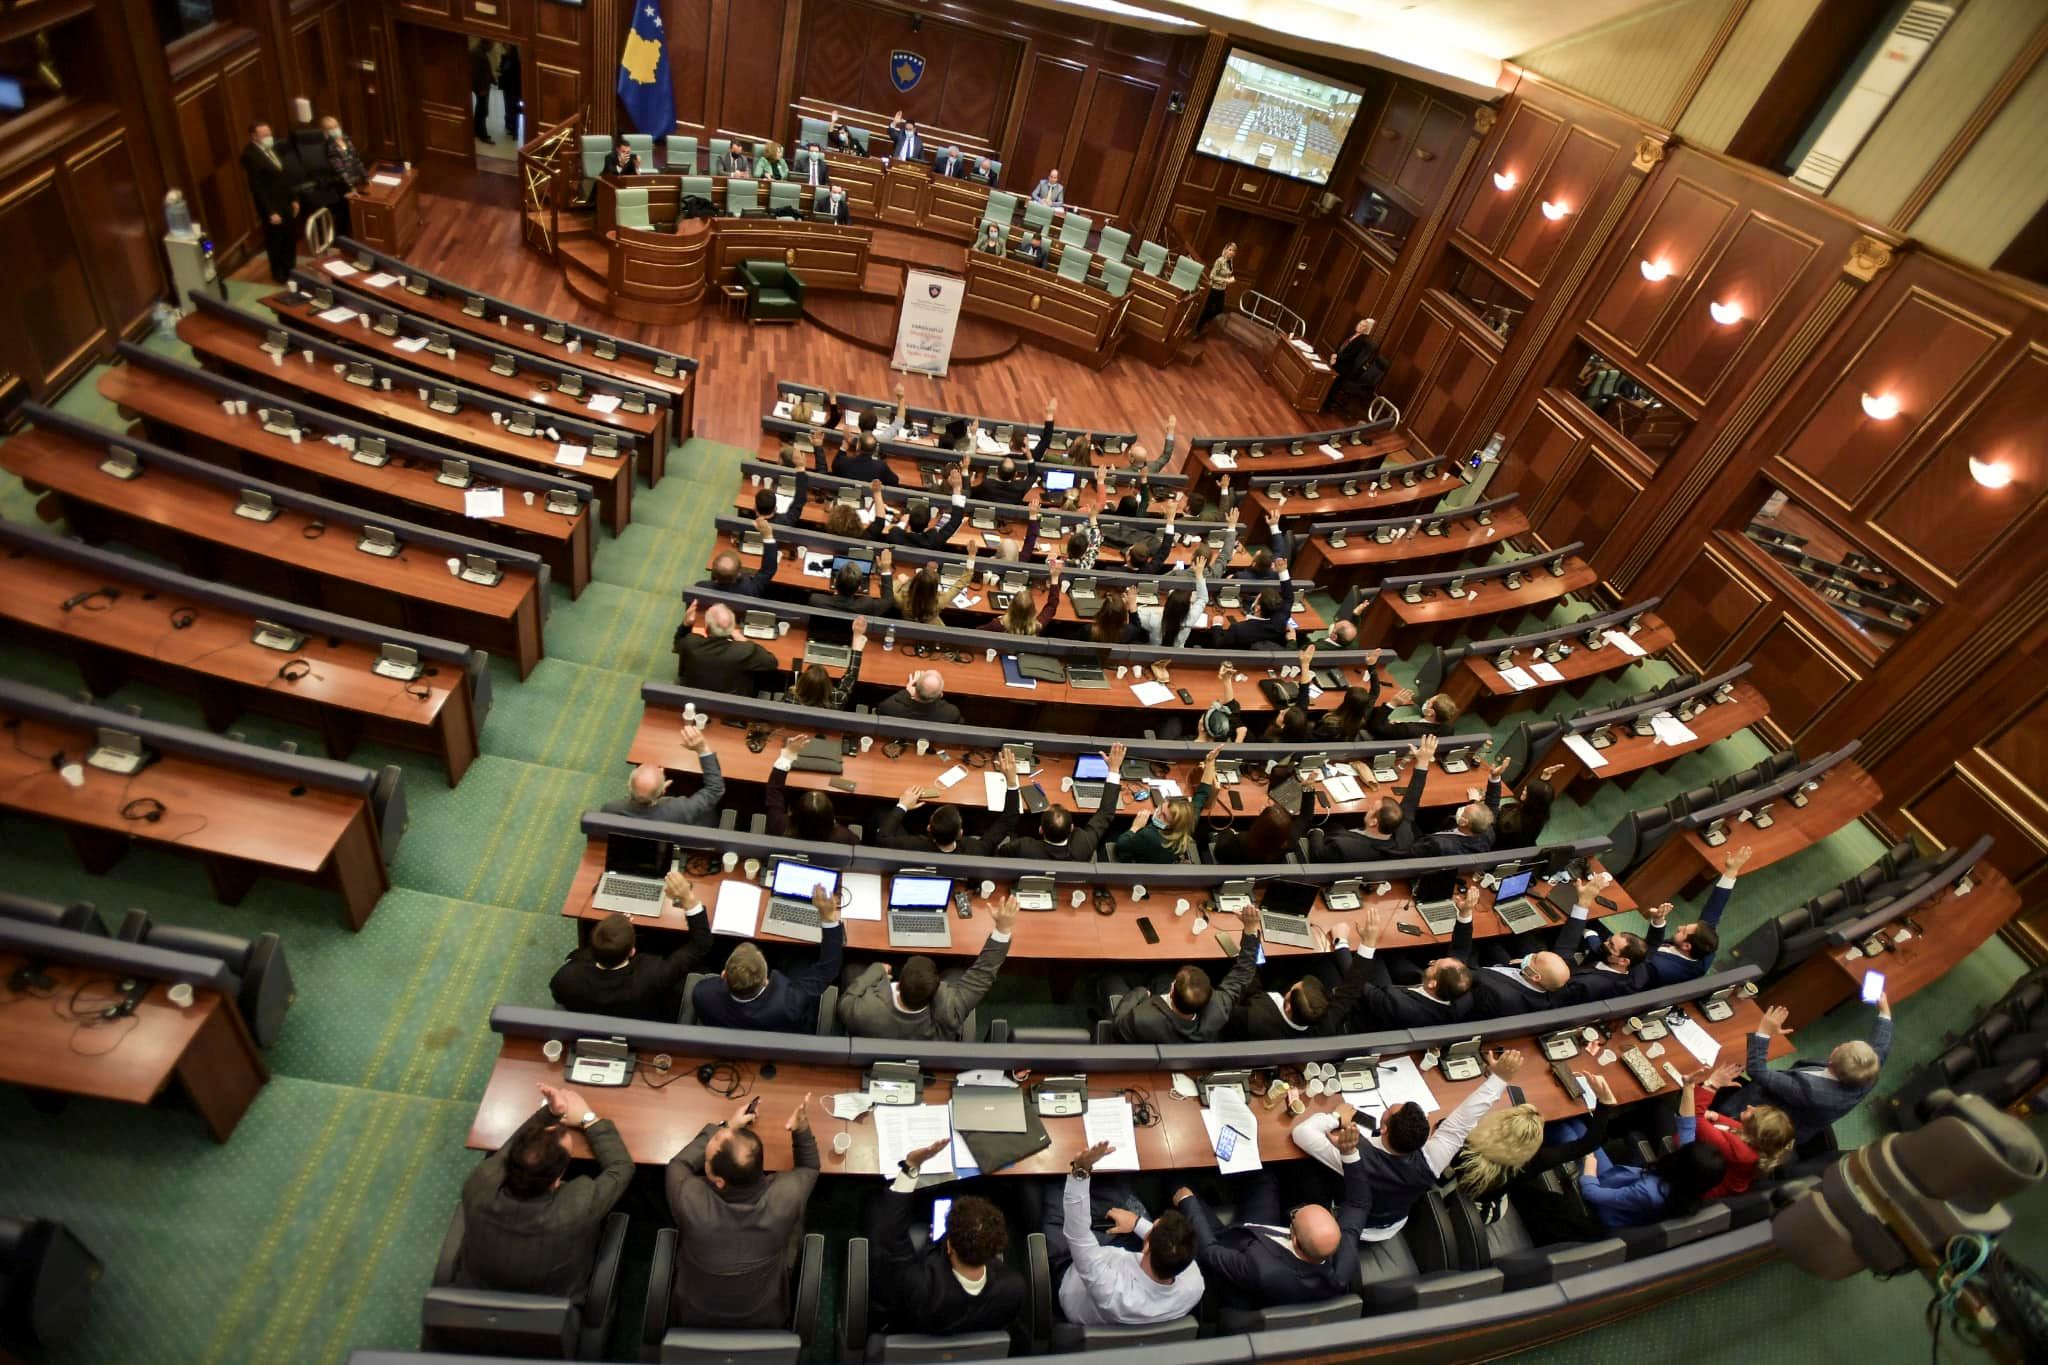 Kuvendi nesër mban seancë, votohet edhe rezoluta për pagat në sektorin publik